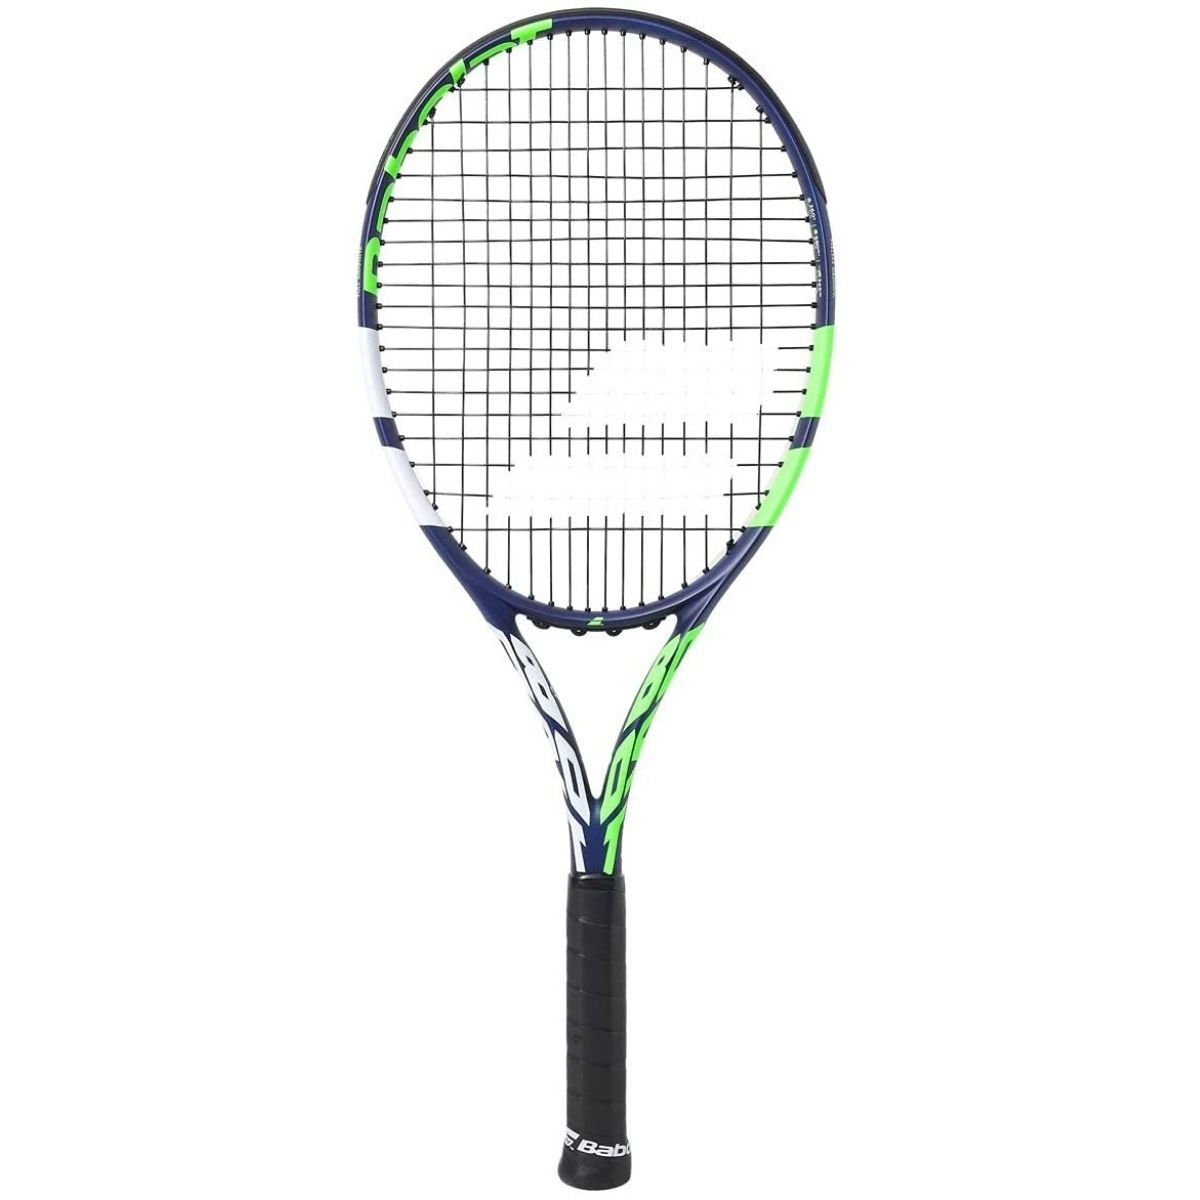 The Best Womens Tennis Rackets Option: Babolat Boost Drive Tennis Racket